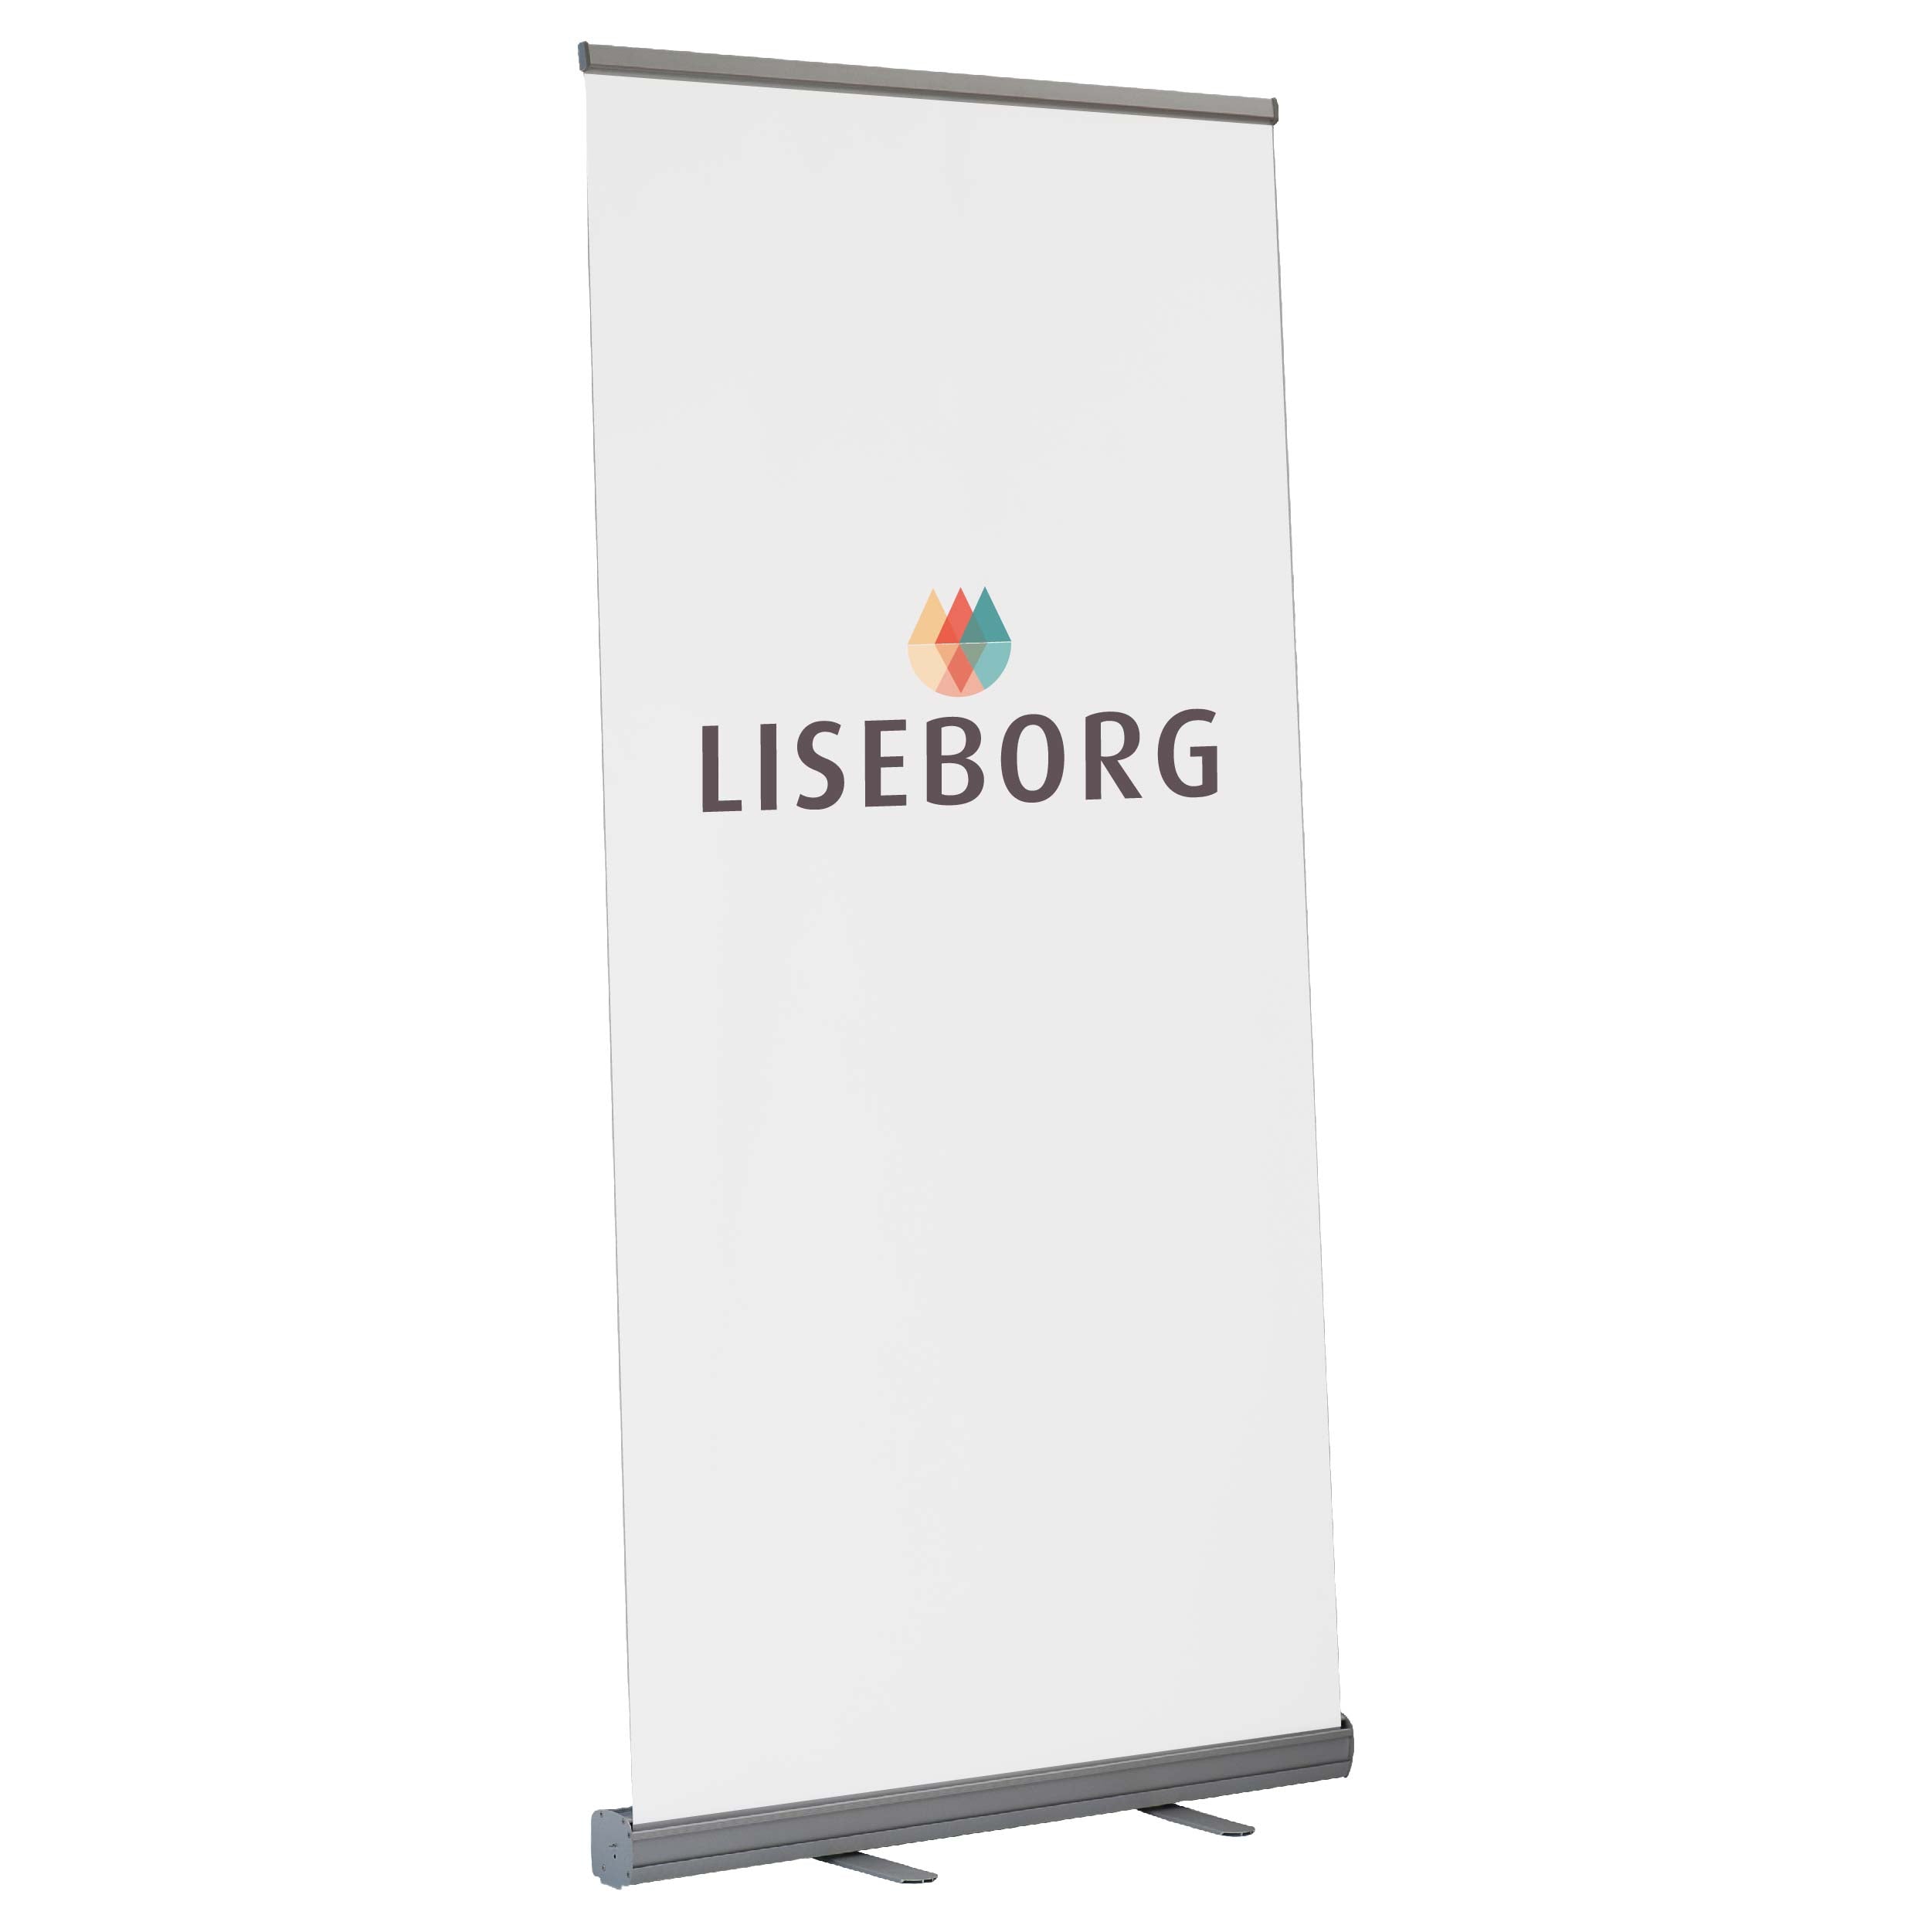 Se Eco - Roll up - 150 x 200 cm inkl. banner hos Liseborg